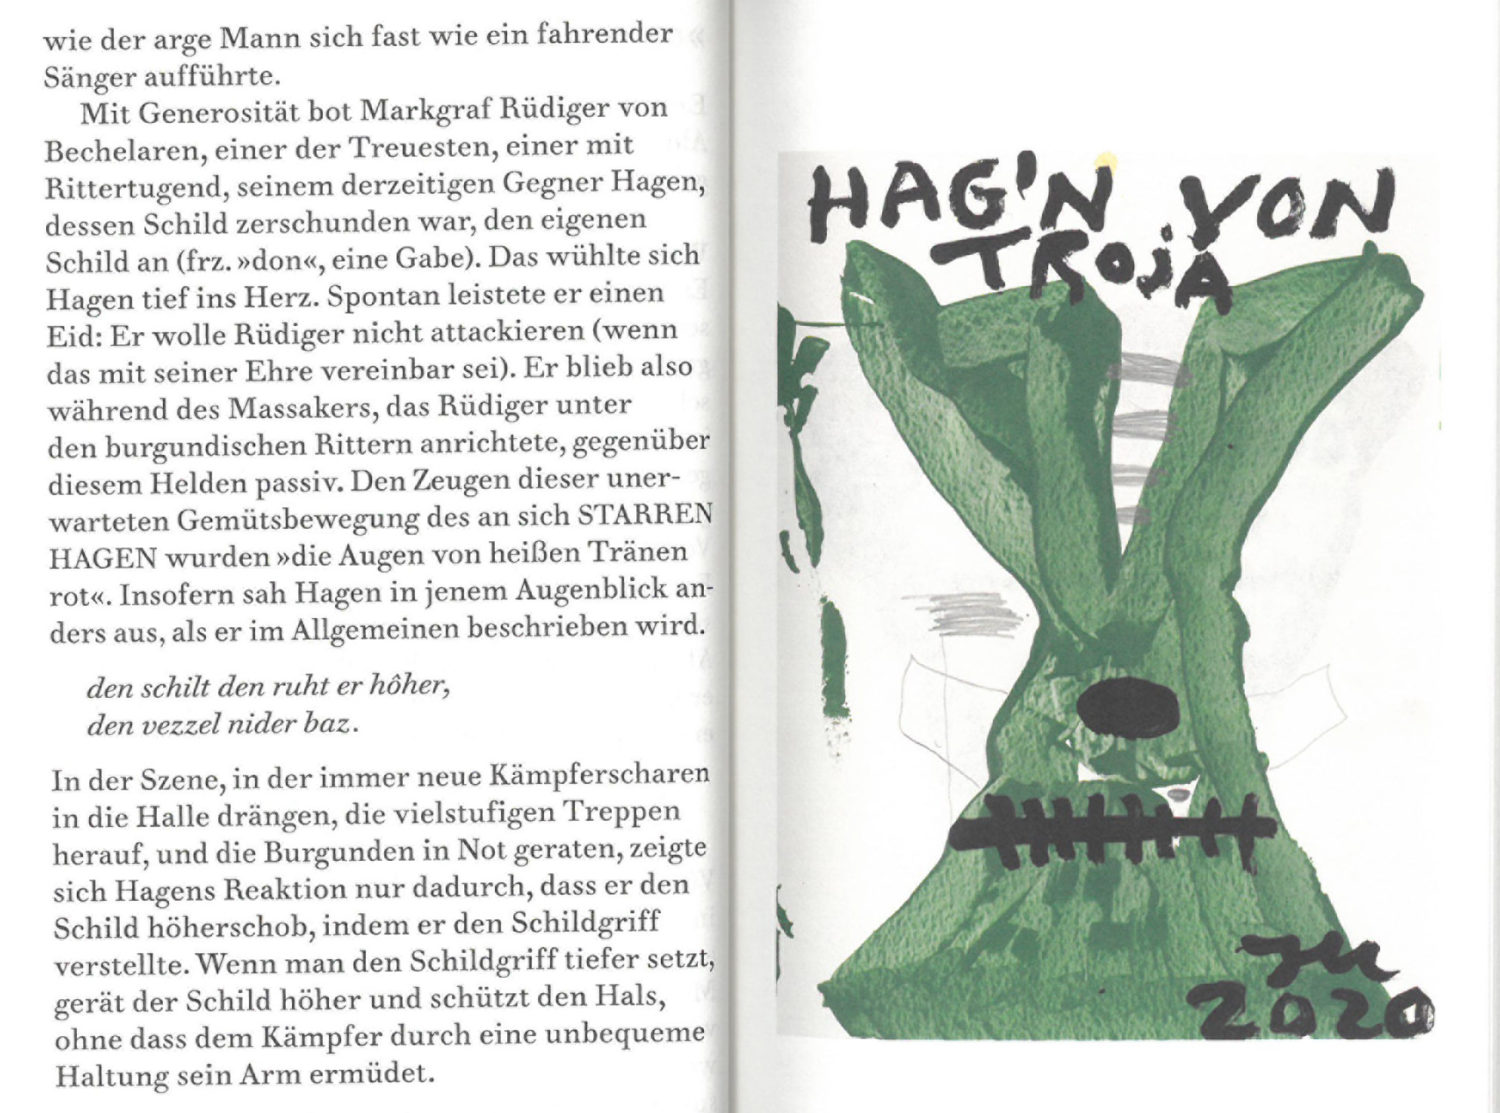 Das Bild zeigt eine Seitenansicht des Buches "Schramme am Himmel. Nachrichten vom Helden Hagen" von Alexander Kluge und Jonathan Meese.